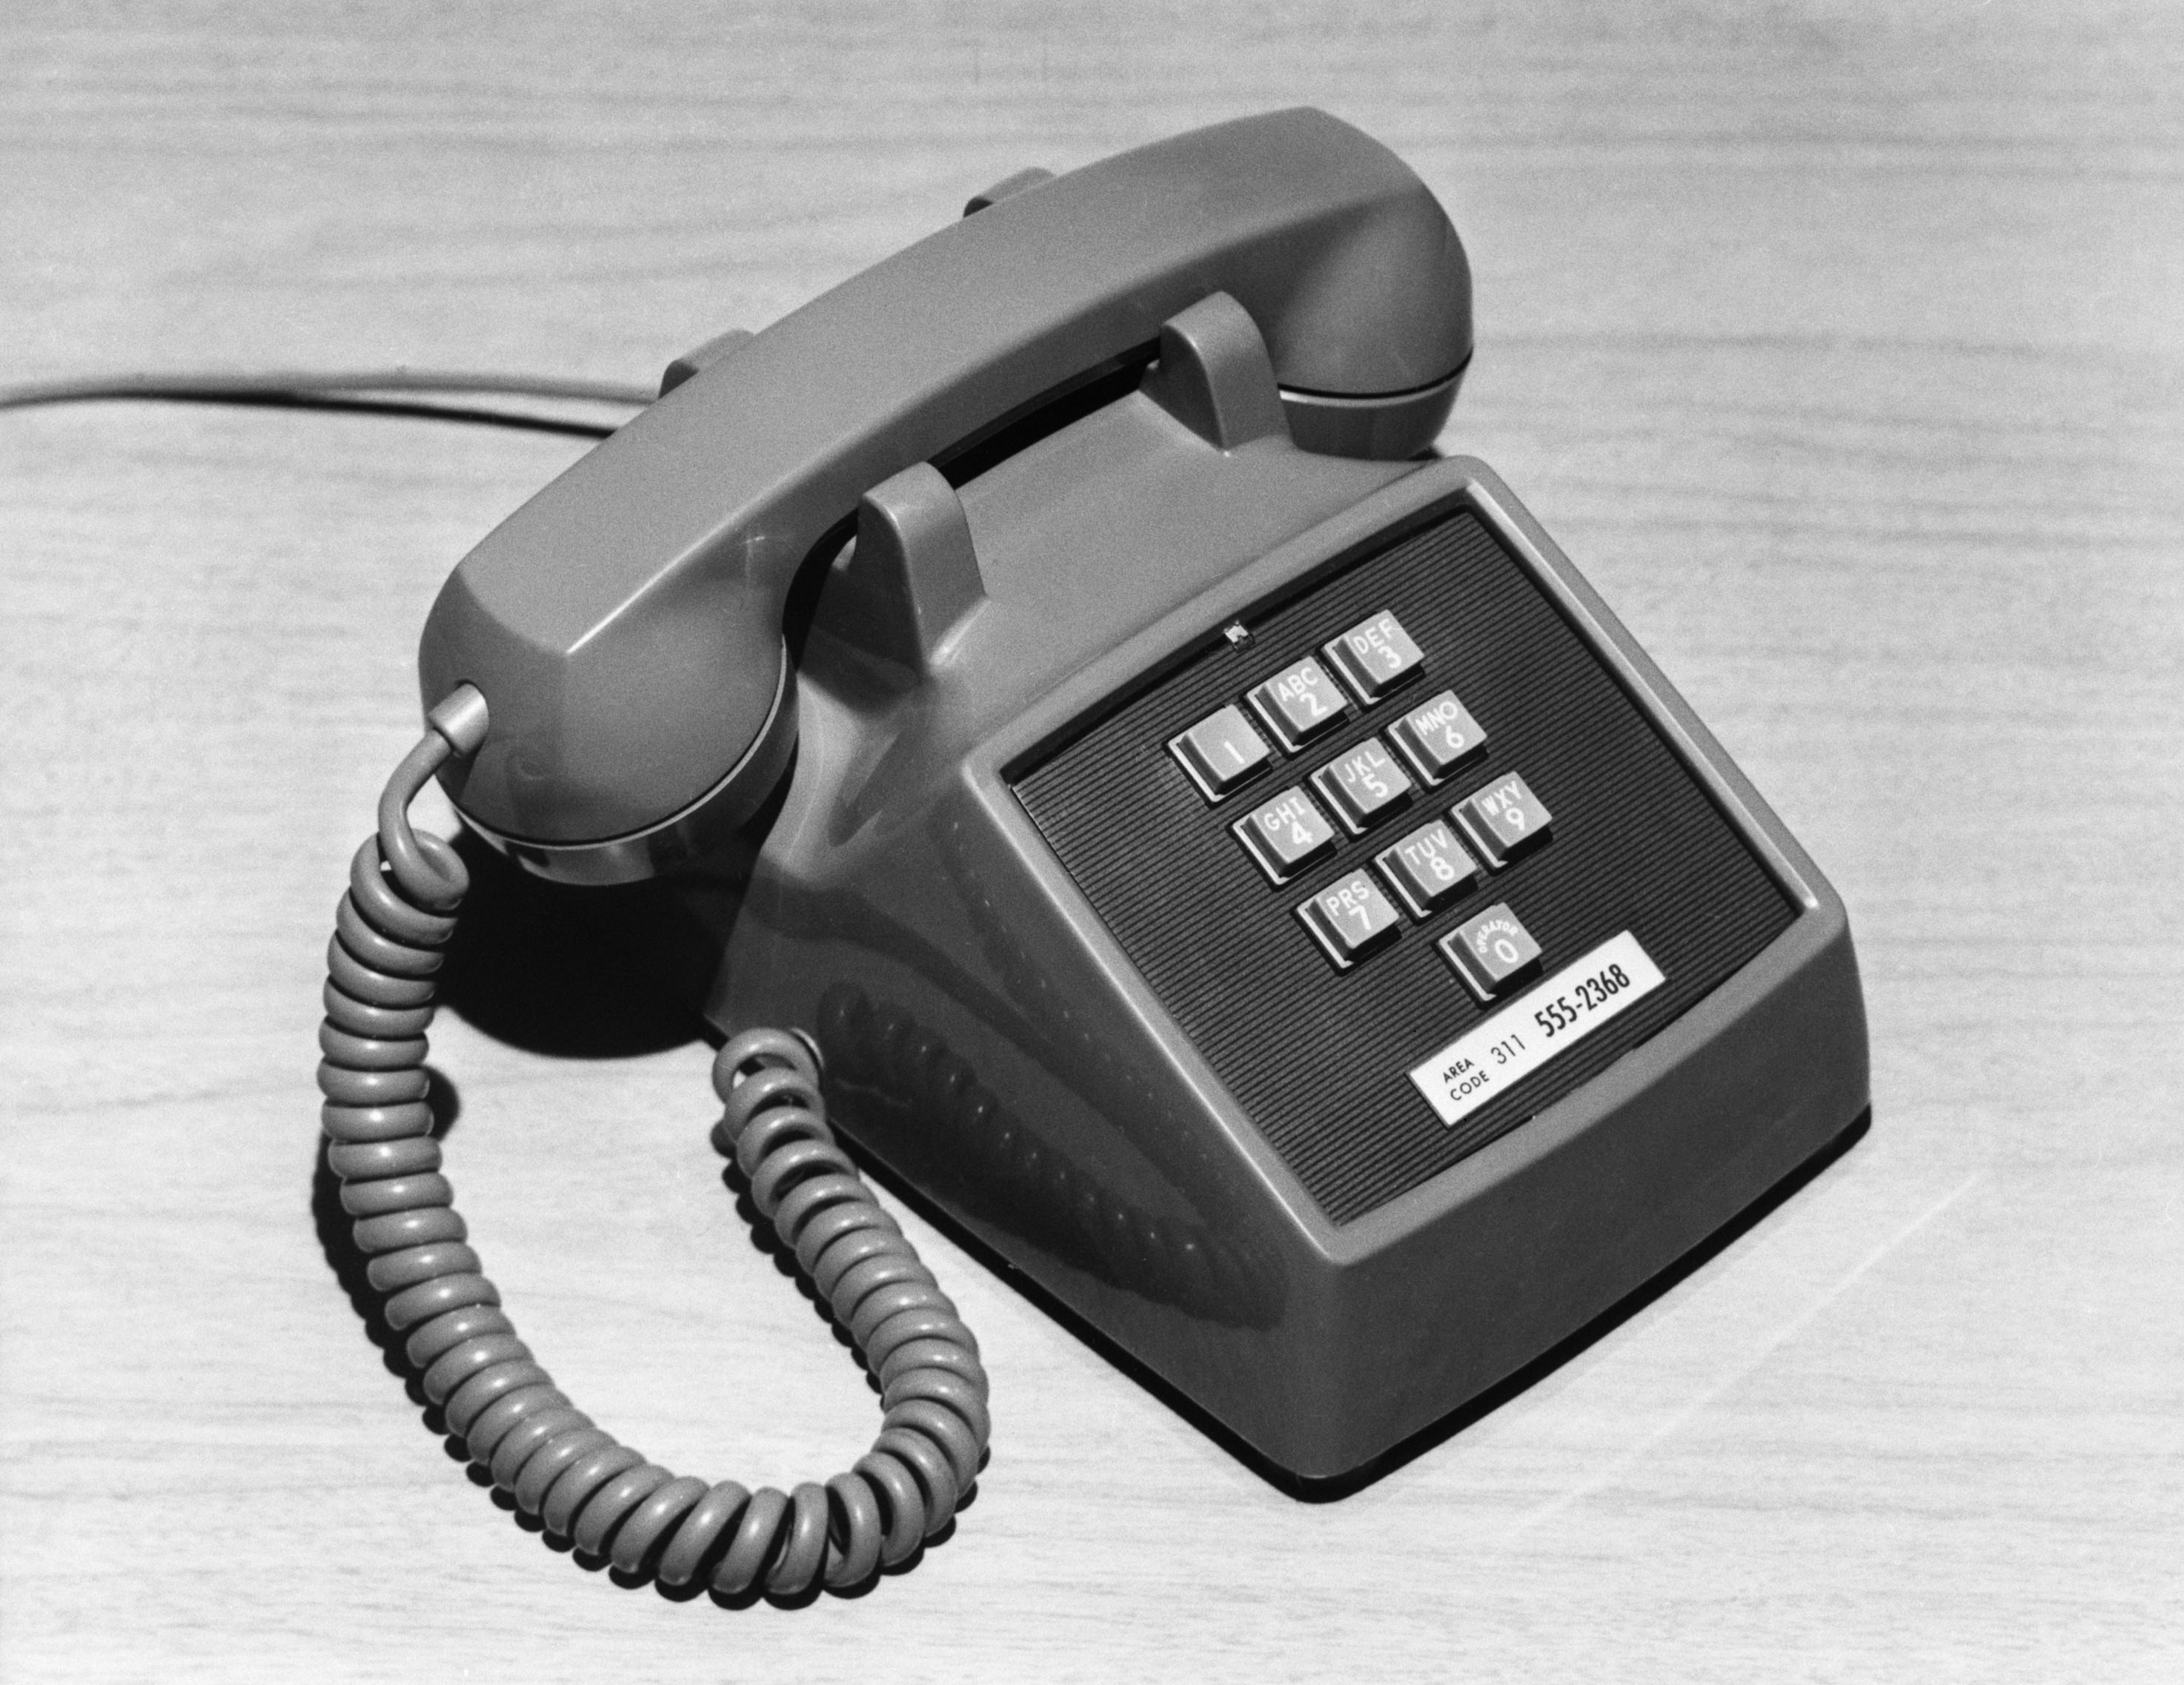 Картинки телефонных аппаратов. Телефонный аппарат. Первый телефонный аппарат. Телефонный аппарат 20 века. Американский телефонный аппарат.